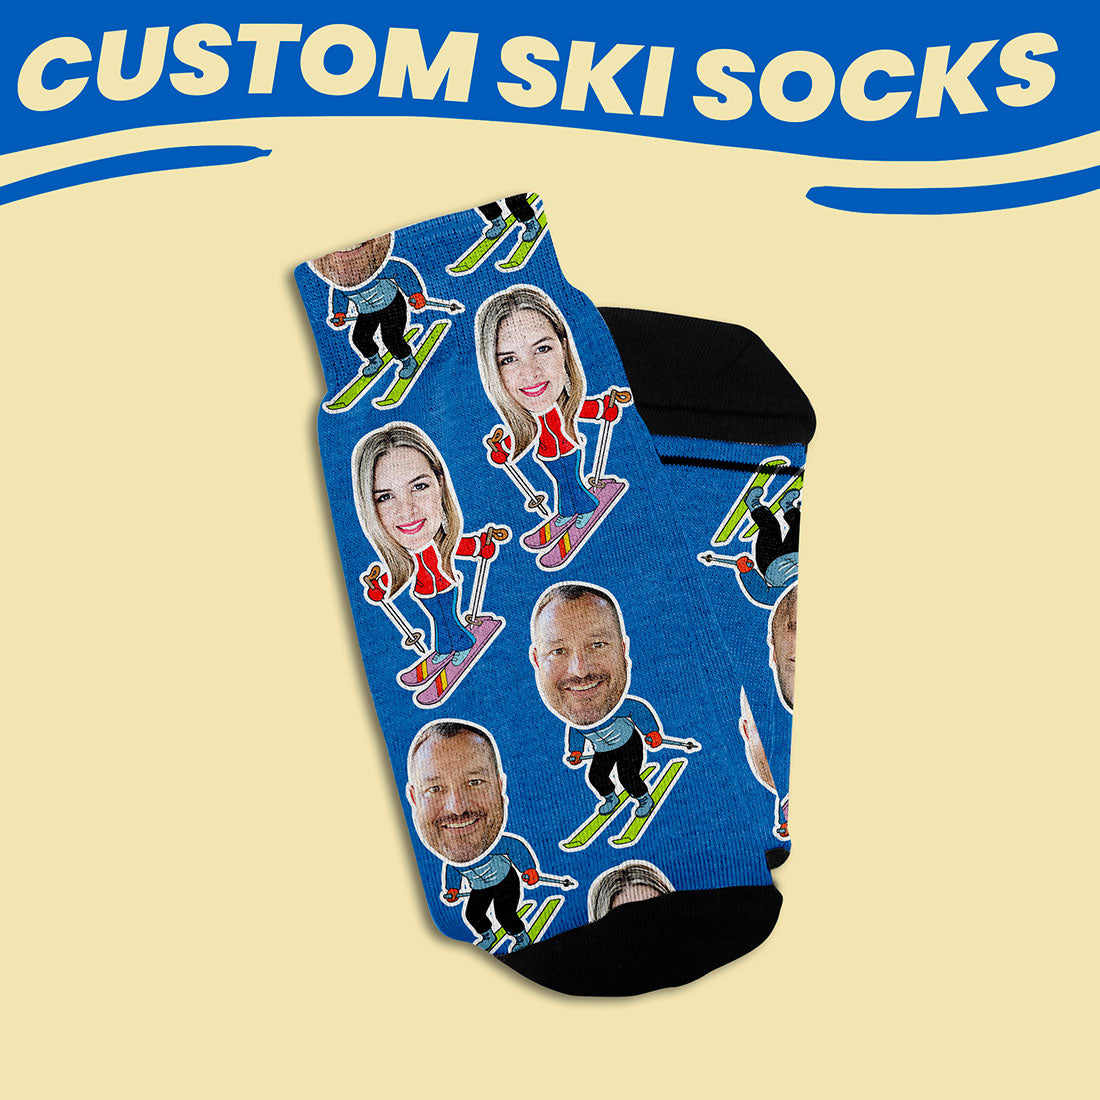 custom gift socks for skiers